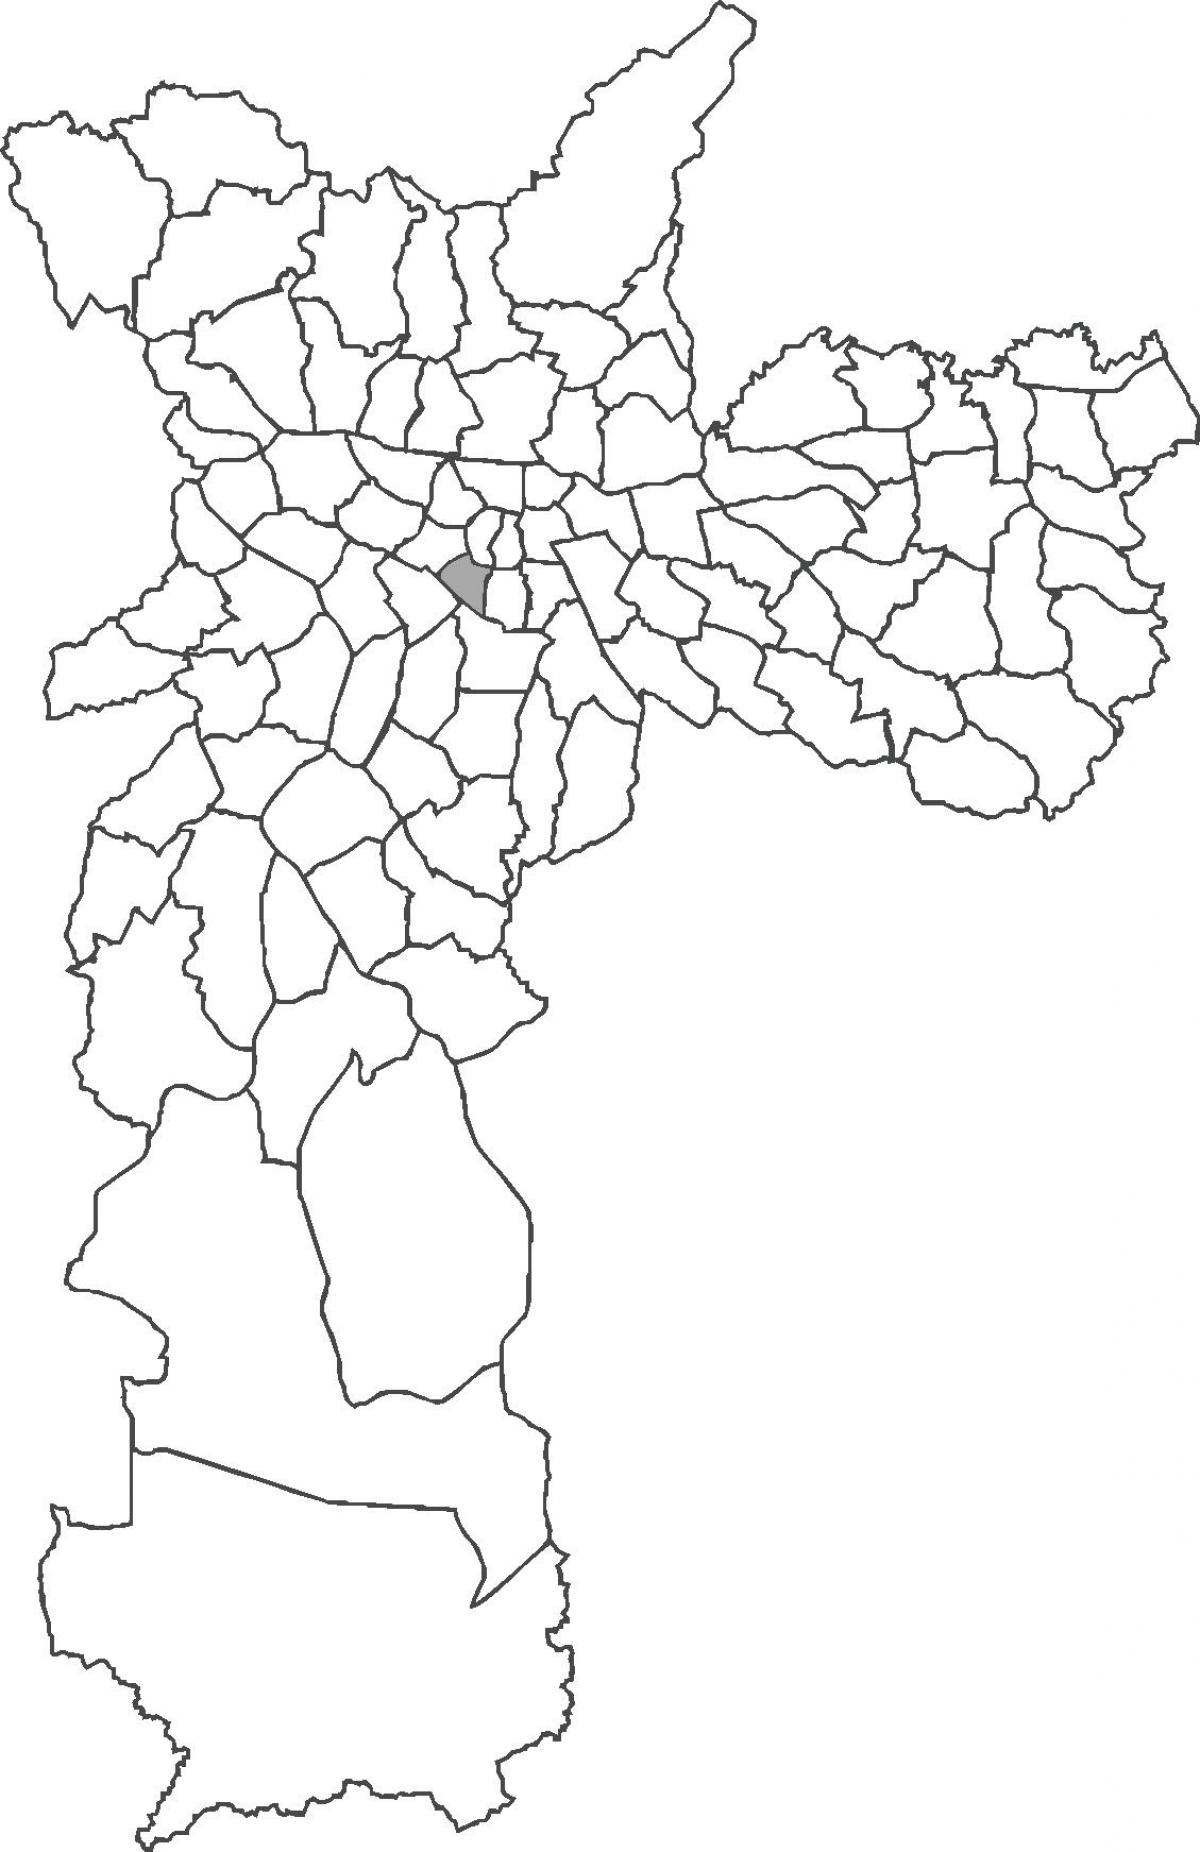 Mappa del quartiere di Bela Vista